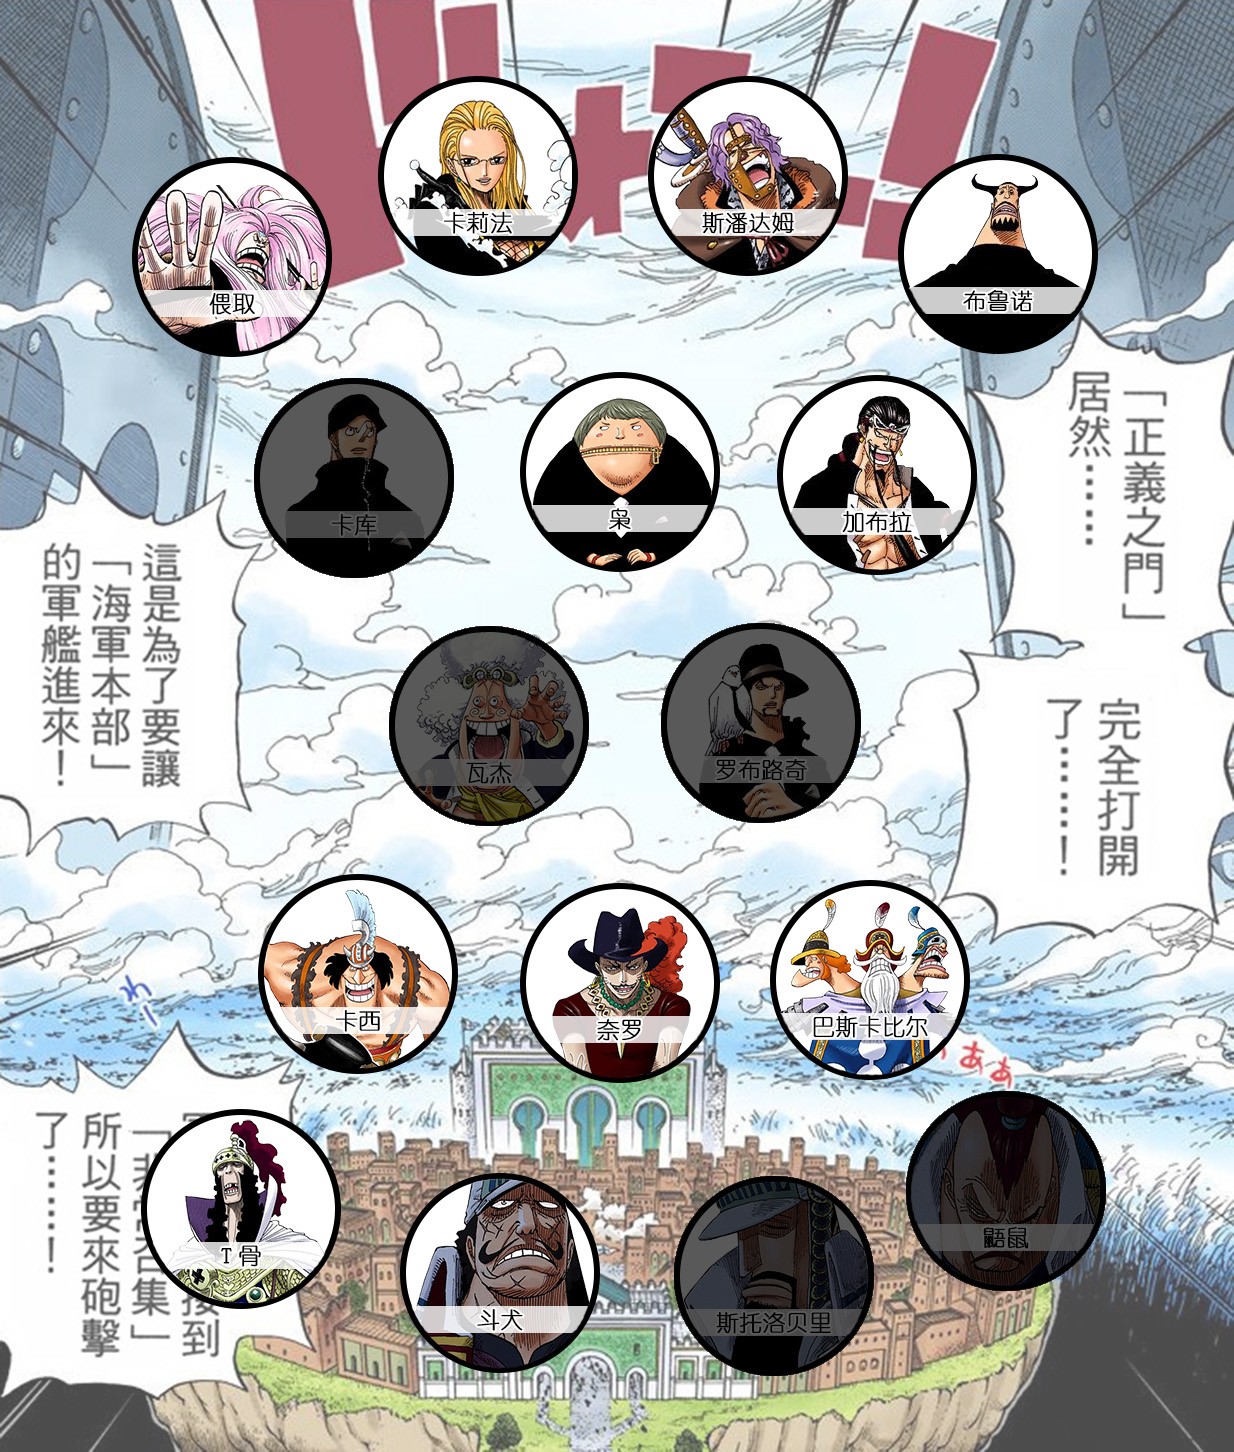 司法岛16人角色图-第五幕.jpg